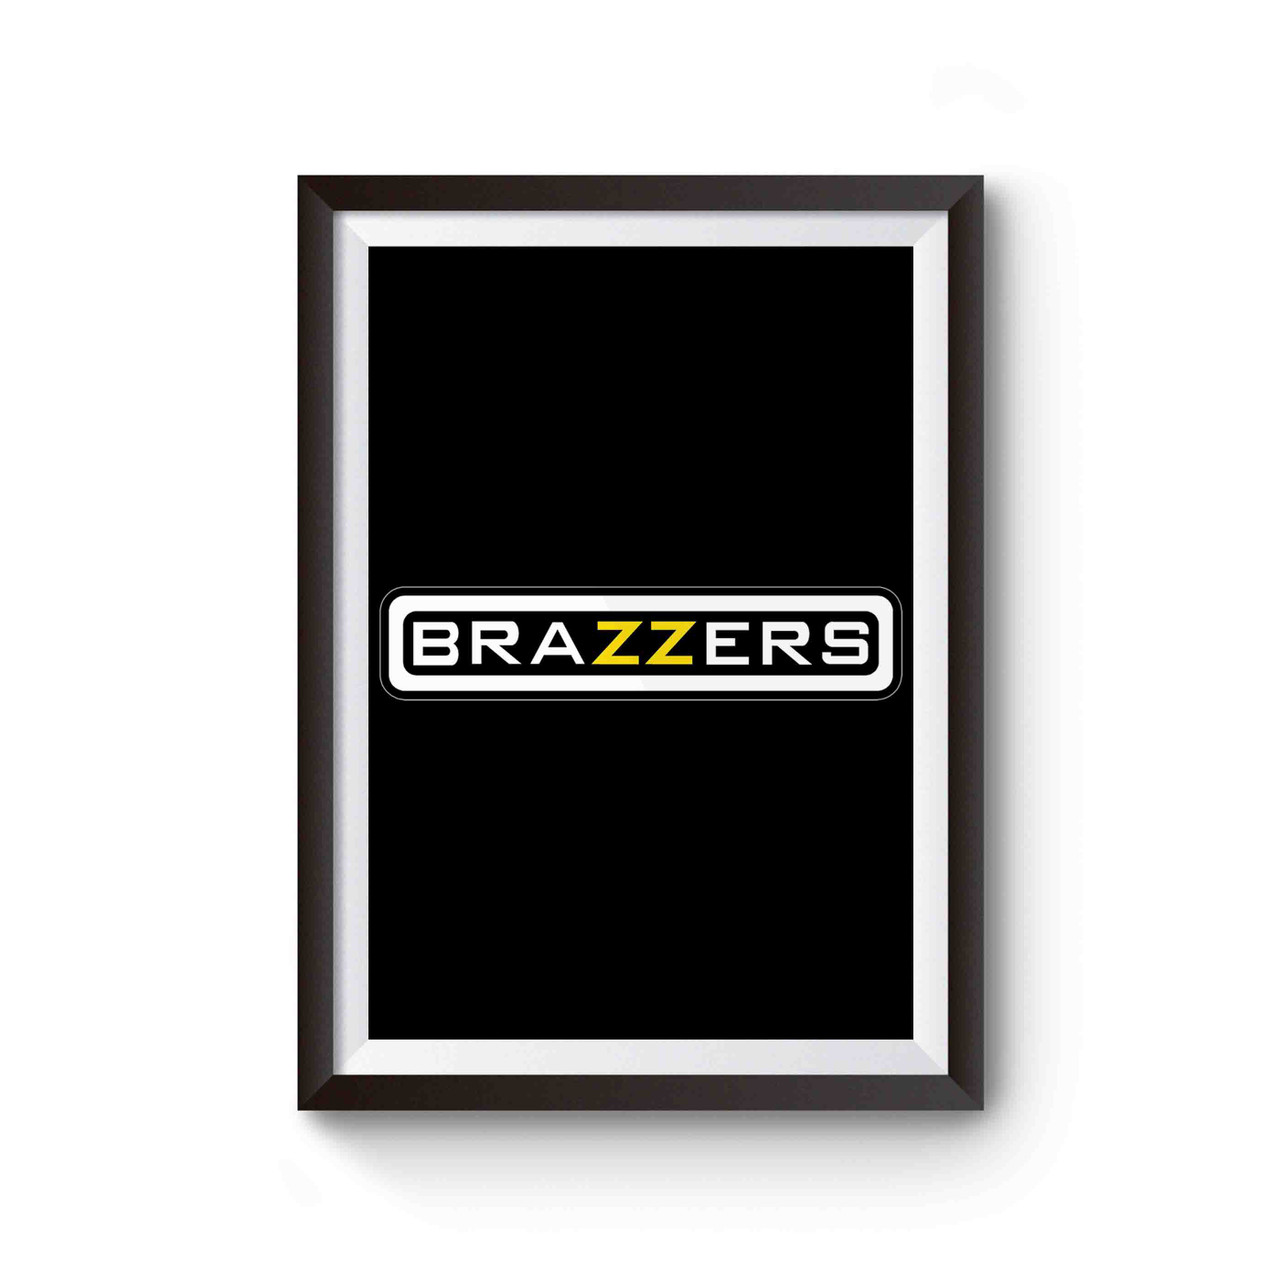 Www Brazes Pron Hb Xxx Com - Brazzers Funny Pornhub XXX Porn Poster